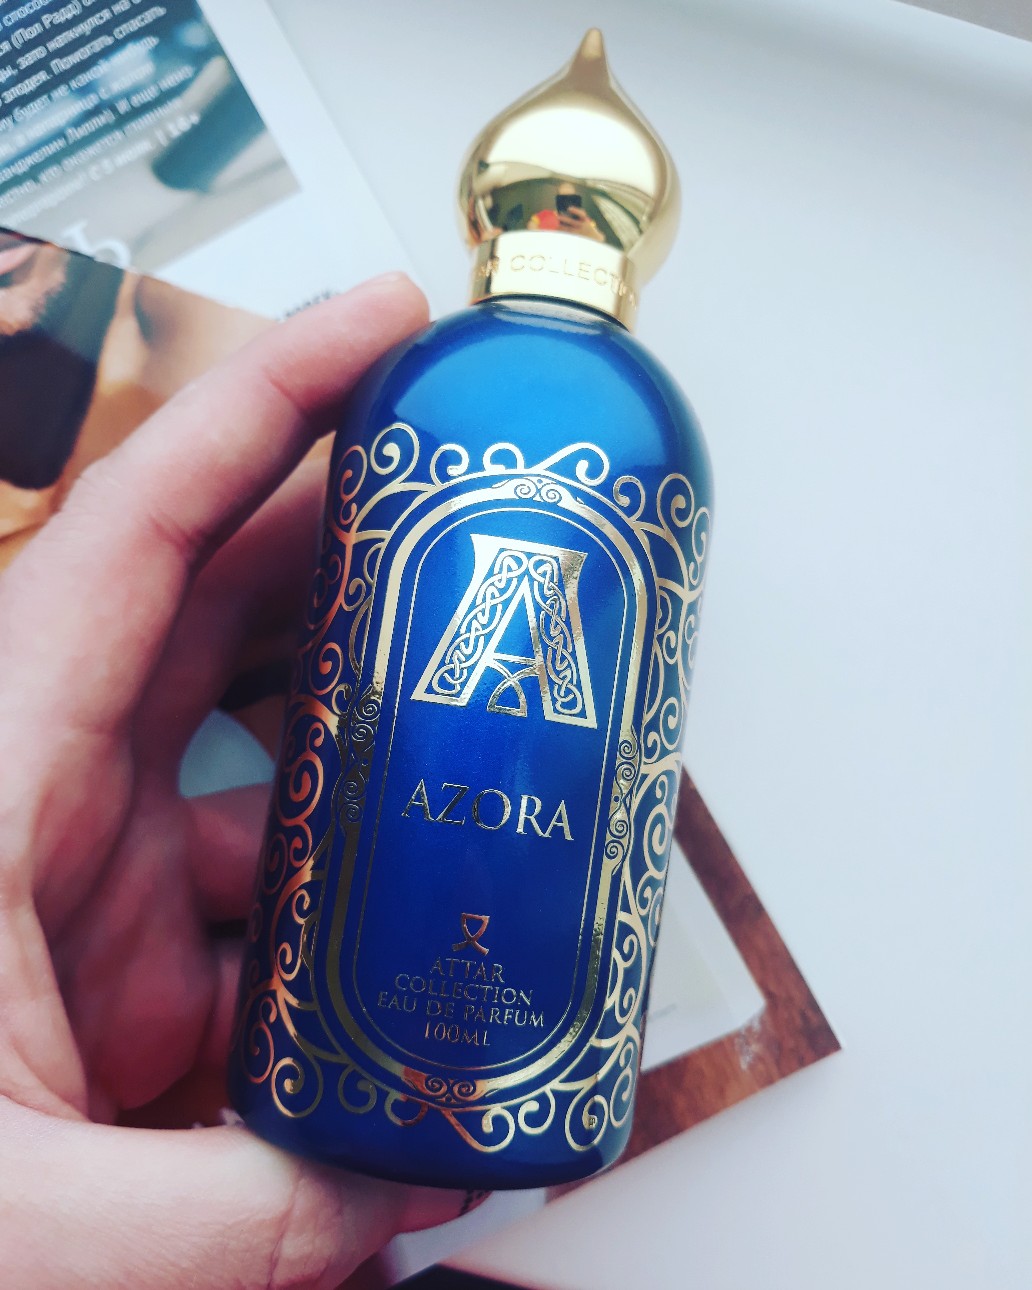 Азора парфюм. Аттар Азора. Attar collection синие. Аттар коллекшн синий. Парфюм AZORA синие.